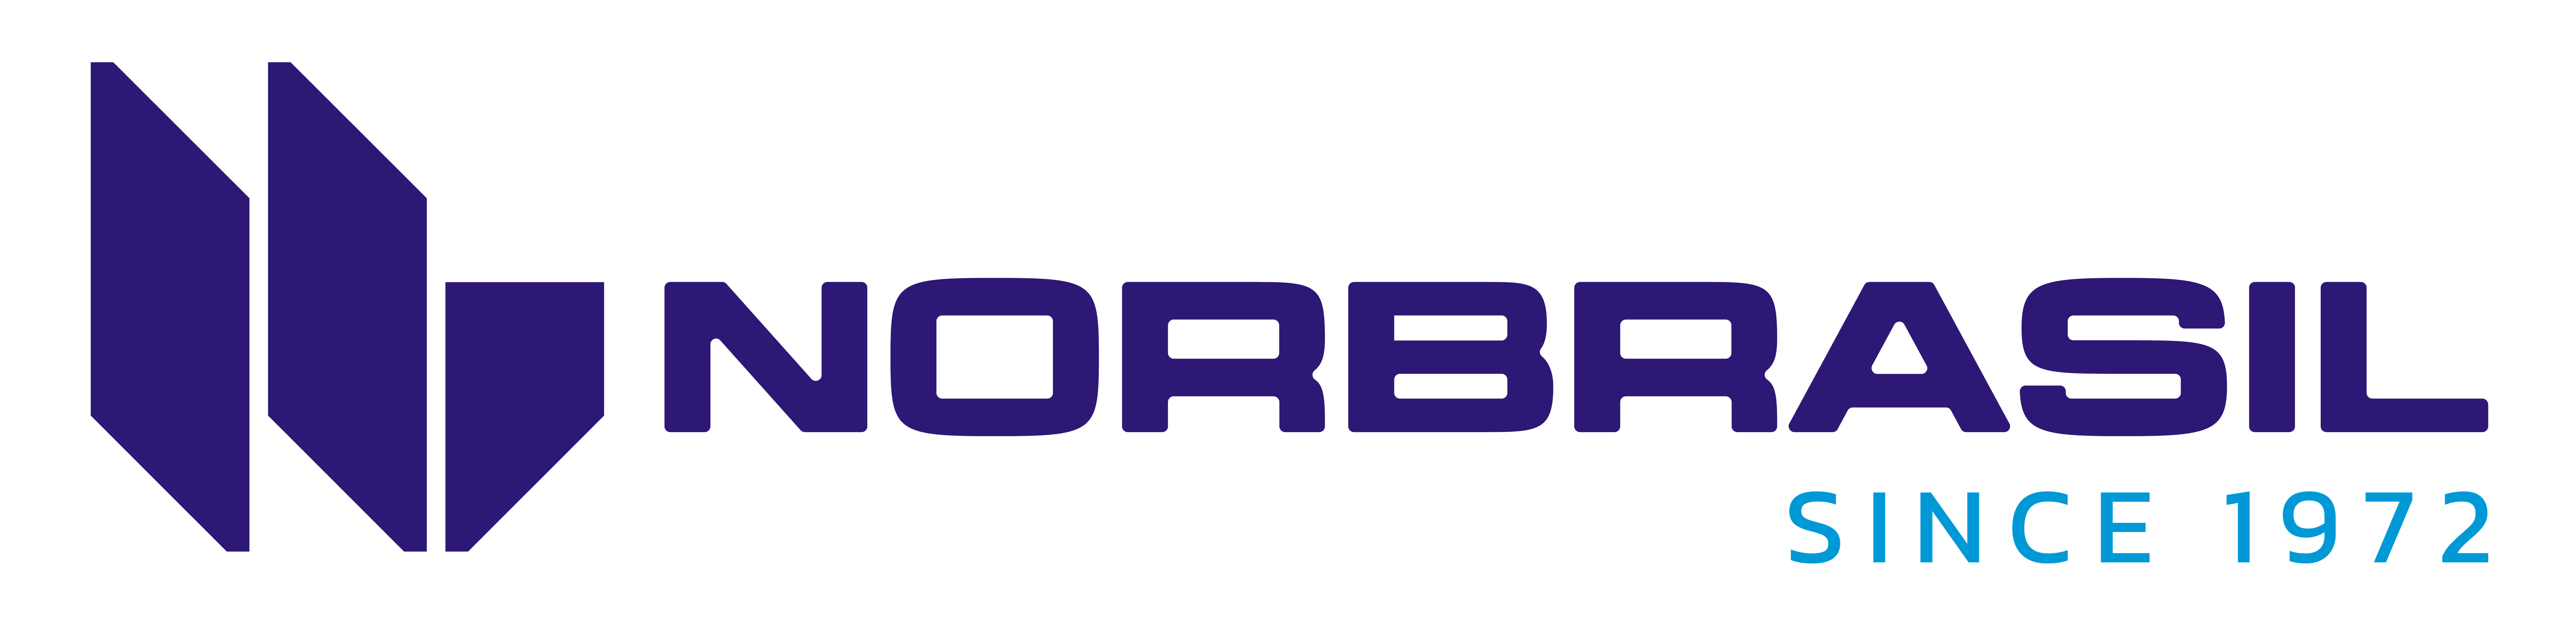 Logotipo NorBrasil - Versão 07